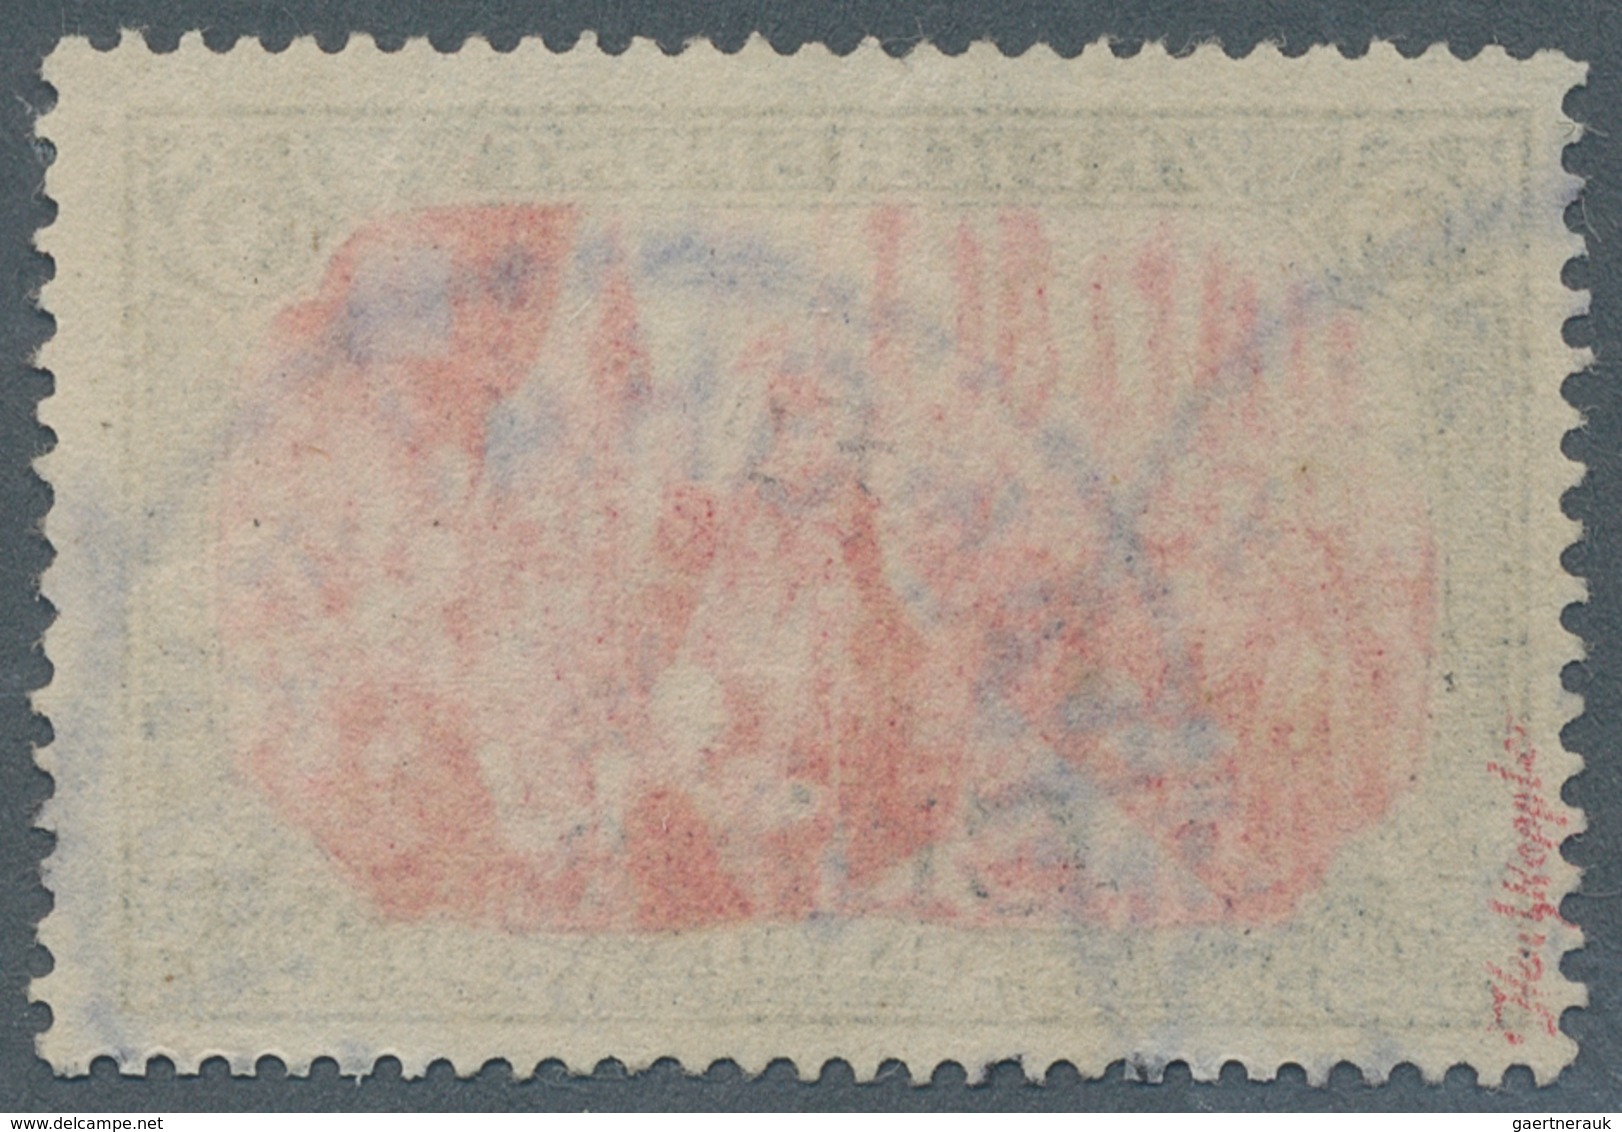 Deutsche Post In China: 1901, 5 Mark, Type I Ohne Nachmalung, Gest. "Shanghai", Gut Gezähnt. Sehr Se - Chine (bureaux)